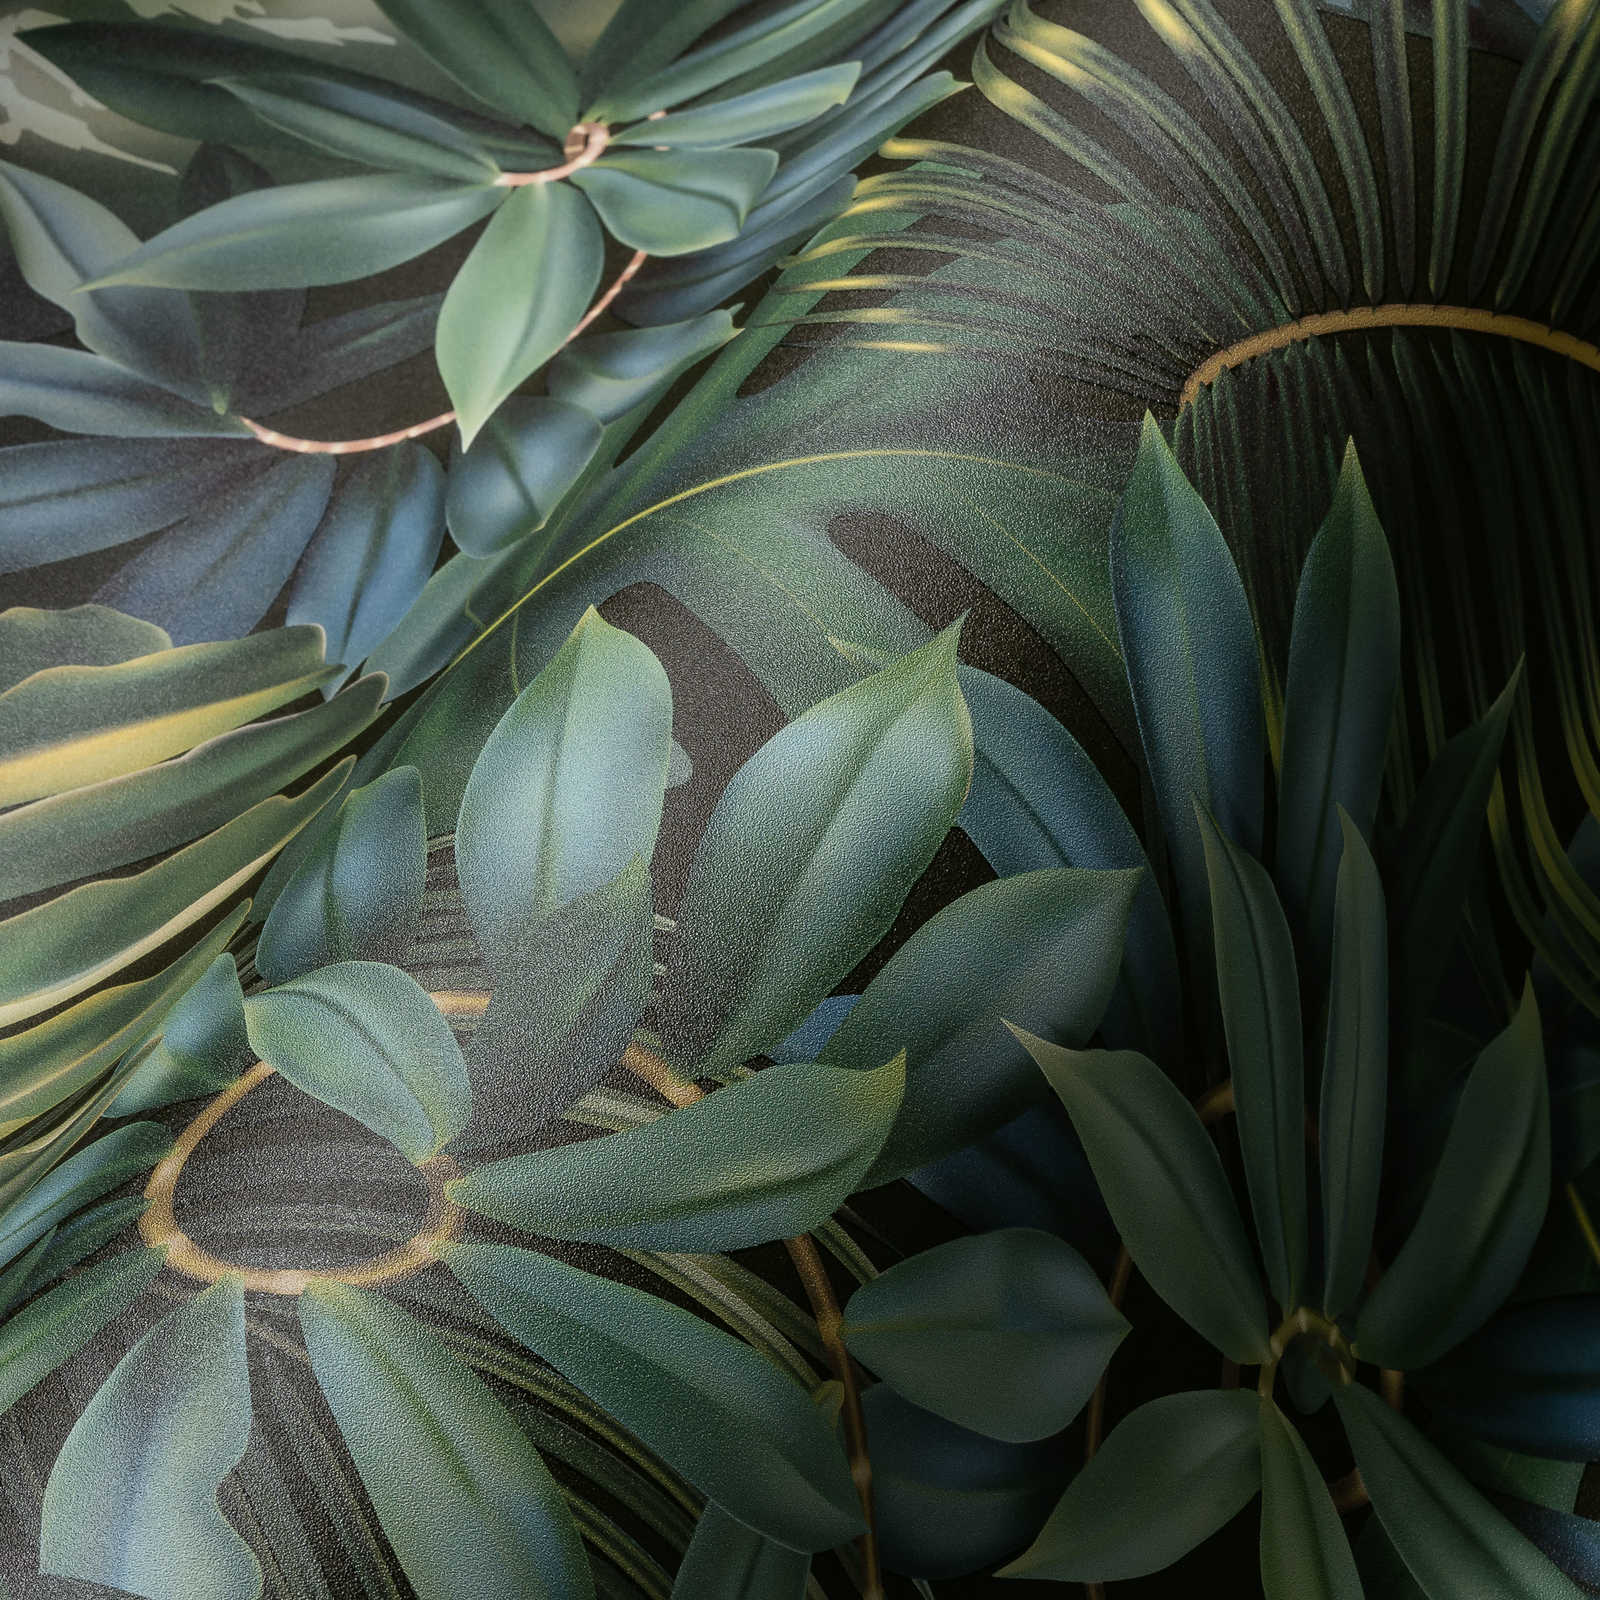             Blätter-Tapete Dschungel Muster – Grün, Schwarz
        